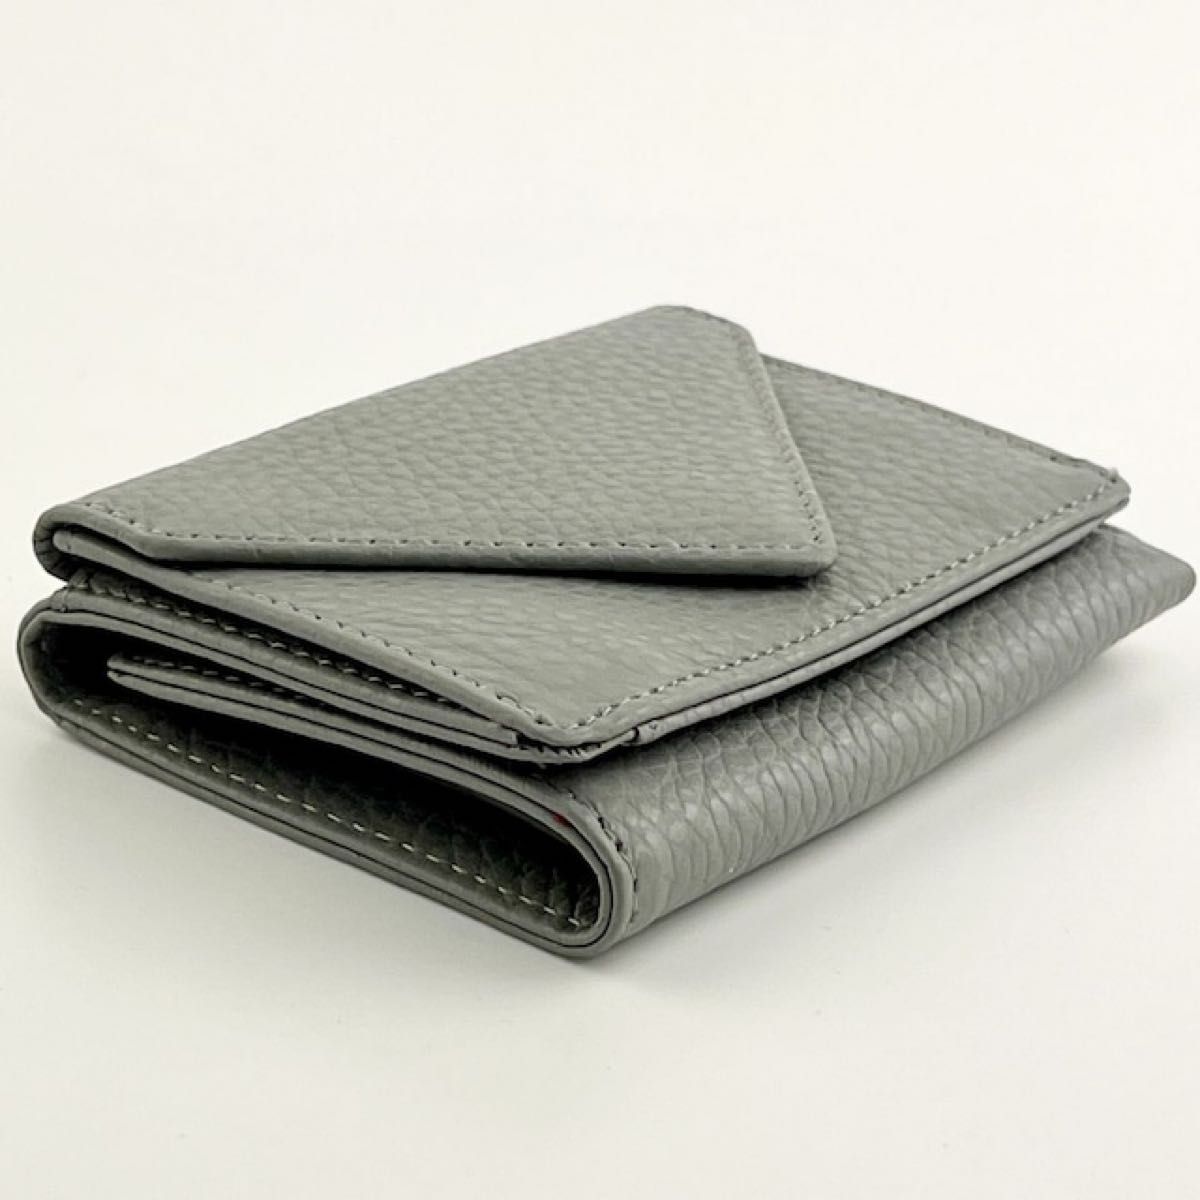 新品 未使用 牛本革 ミニ財布 レディース 三つ折り 本革 コンパクト 小さい 財布 レター型